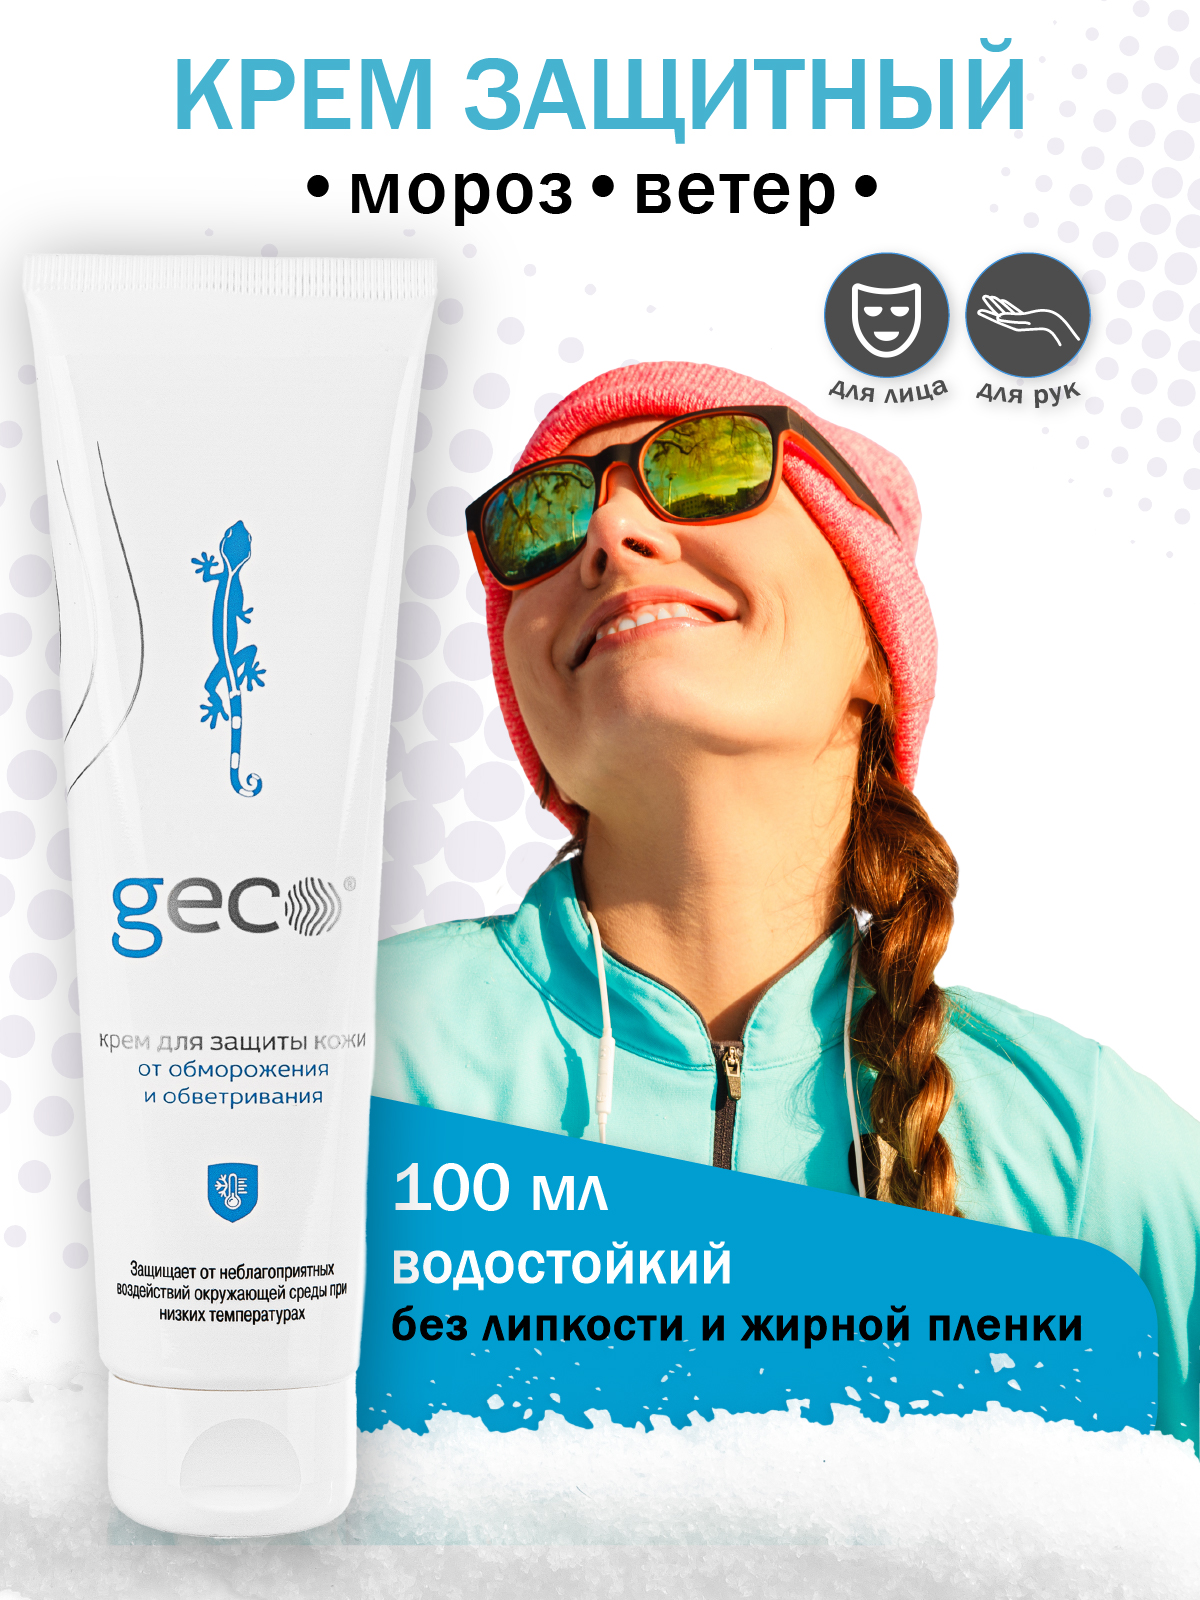 Крем GECO 100 мл для лица и рук защита от мороза крышка флип-топ кругосветный дед мороз